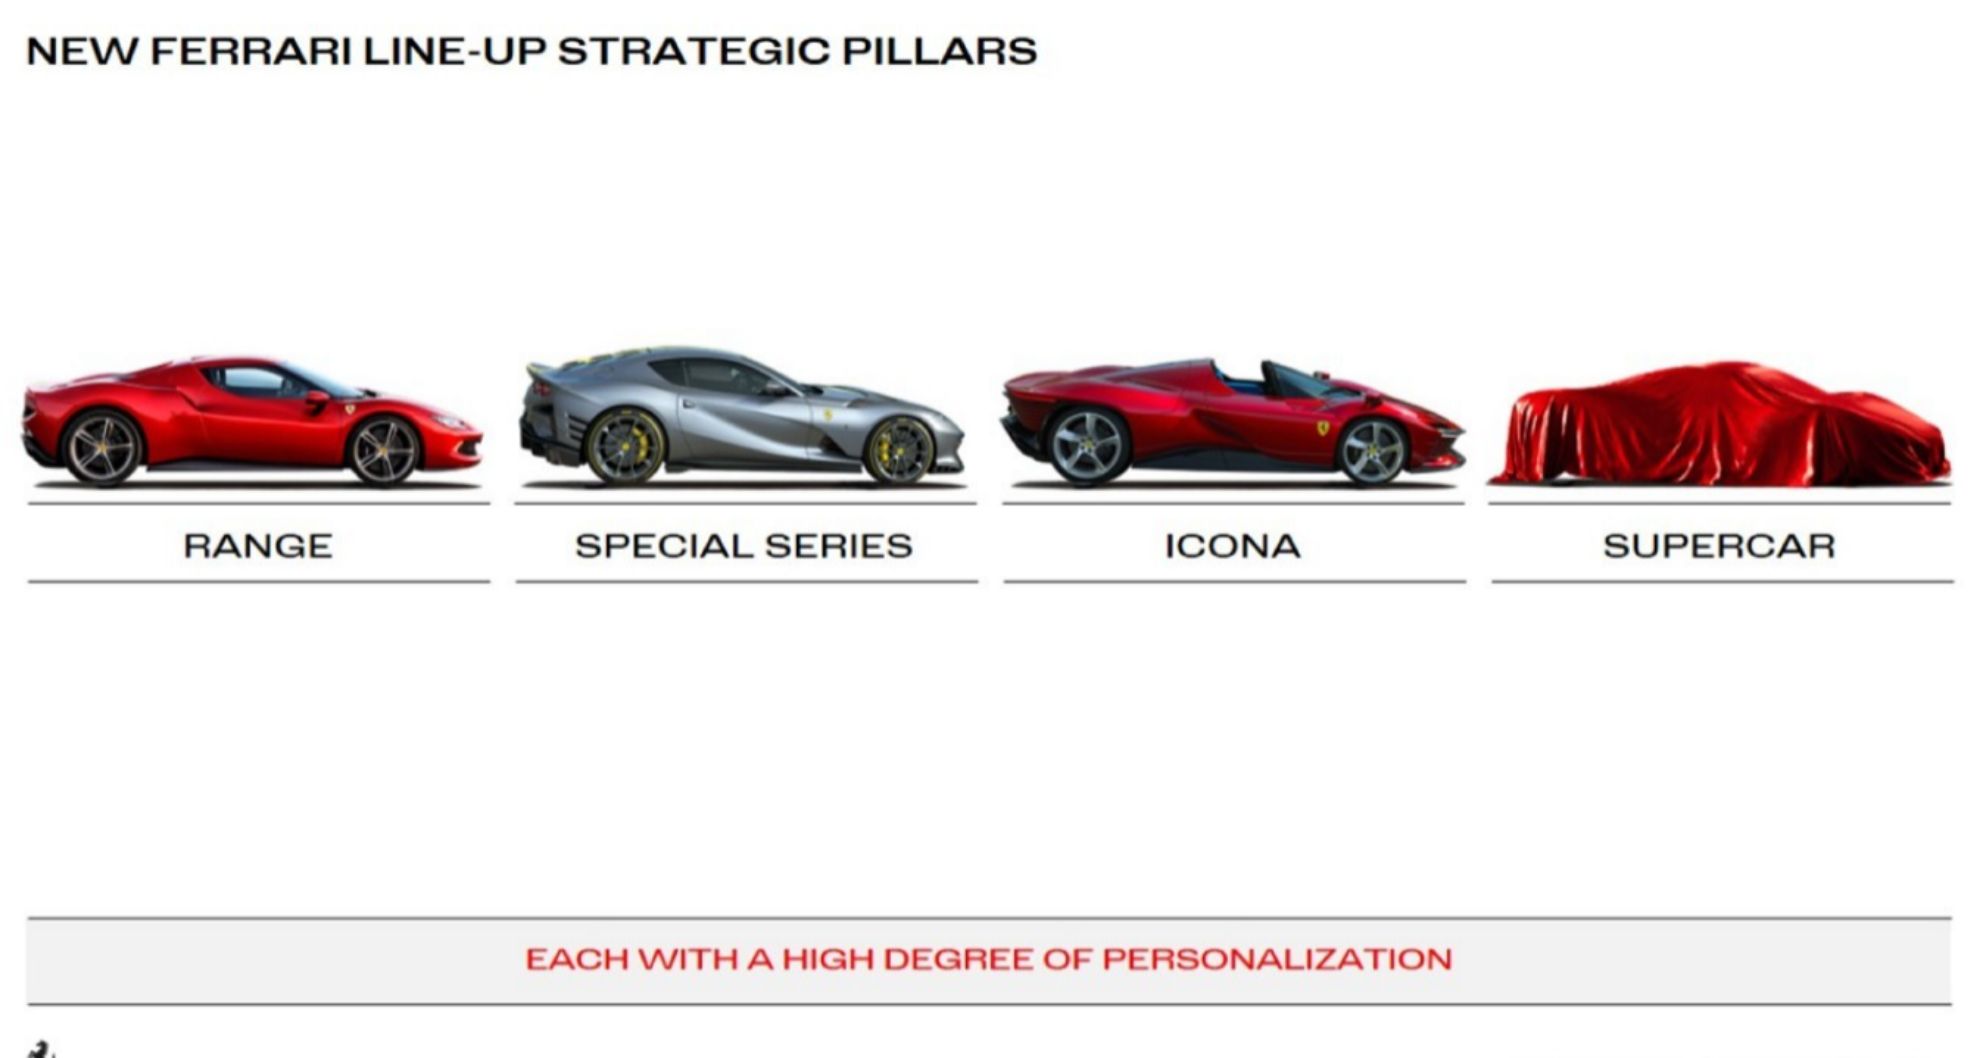 La estructura de la gama Ferrari se completará cuando llegue el Supercar.